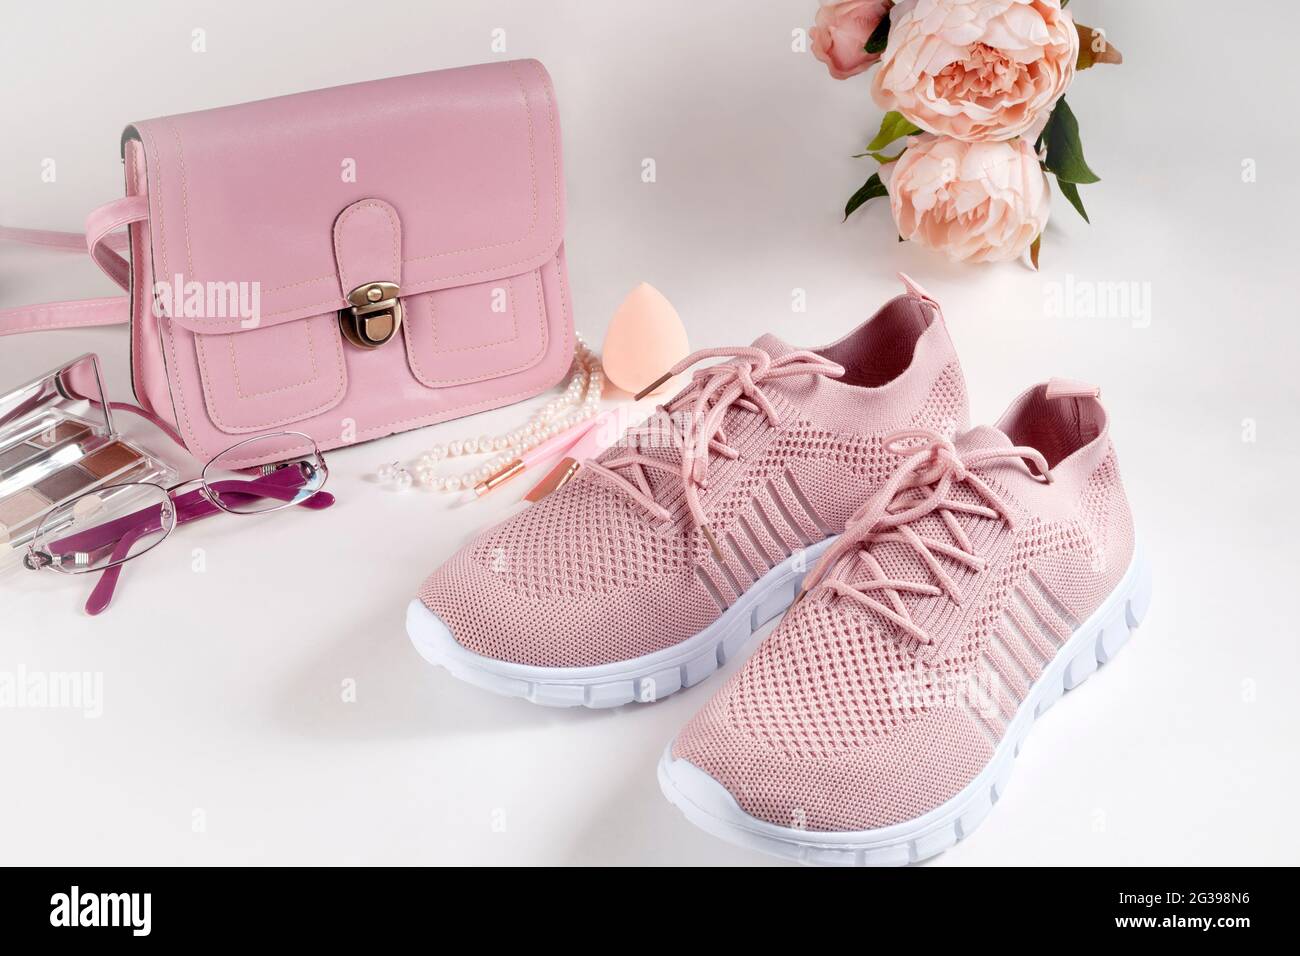 Layout auf weißem Hintergrund. Eine kleine Handtasche, eine Brille, eine Uhr und leichte Sommerschuhe in rosa und lila Farben. Stockfoto